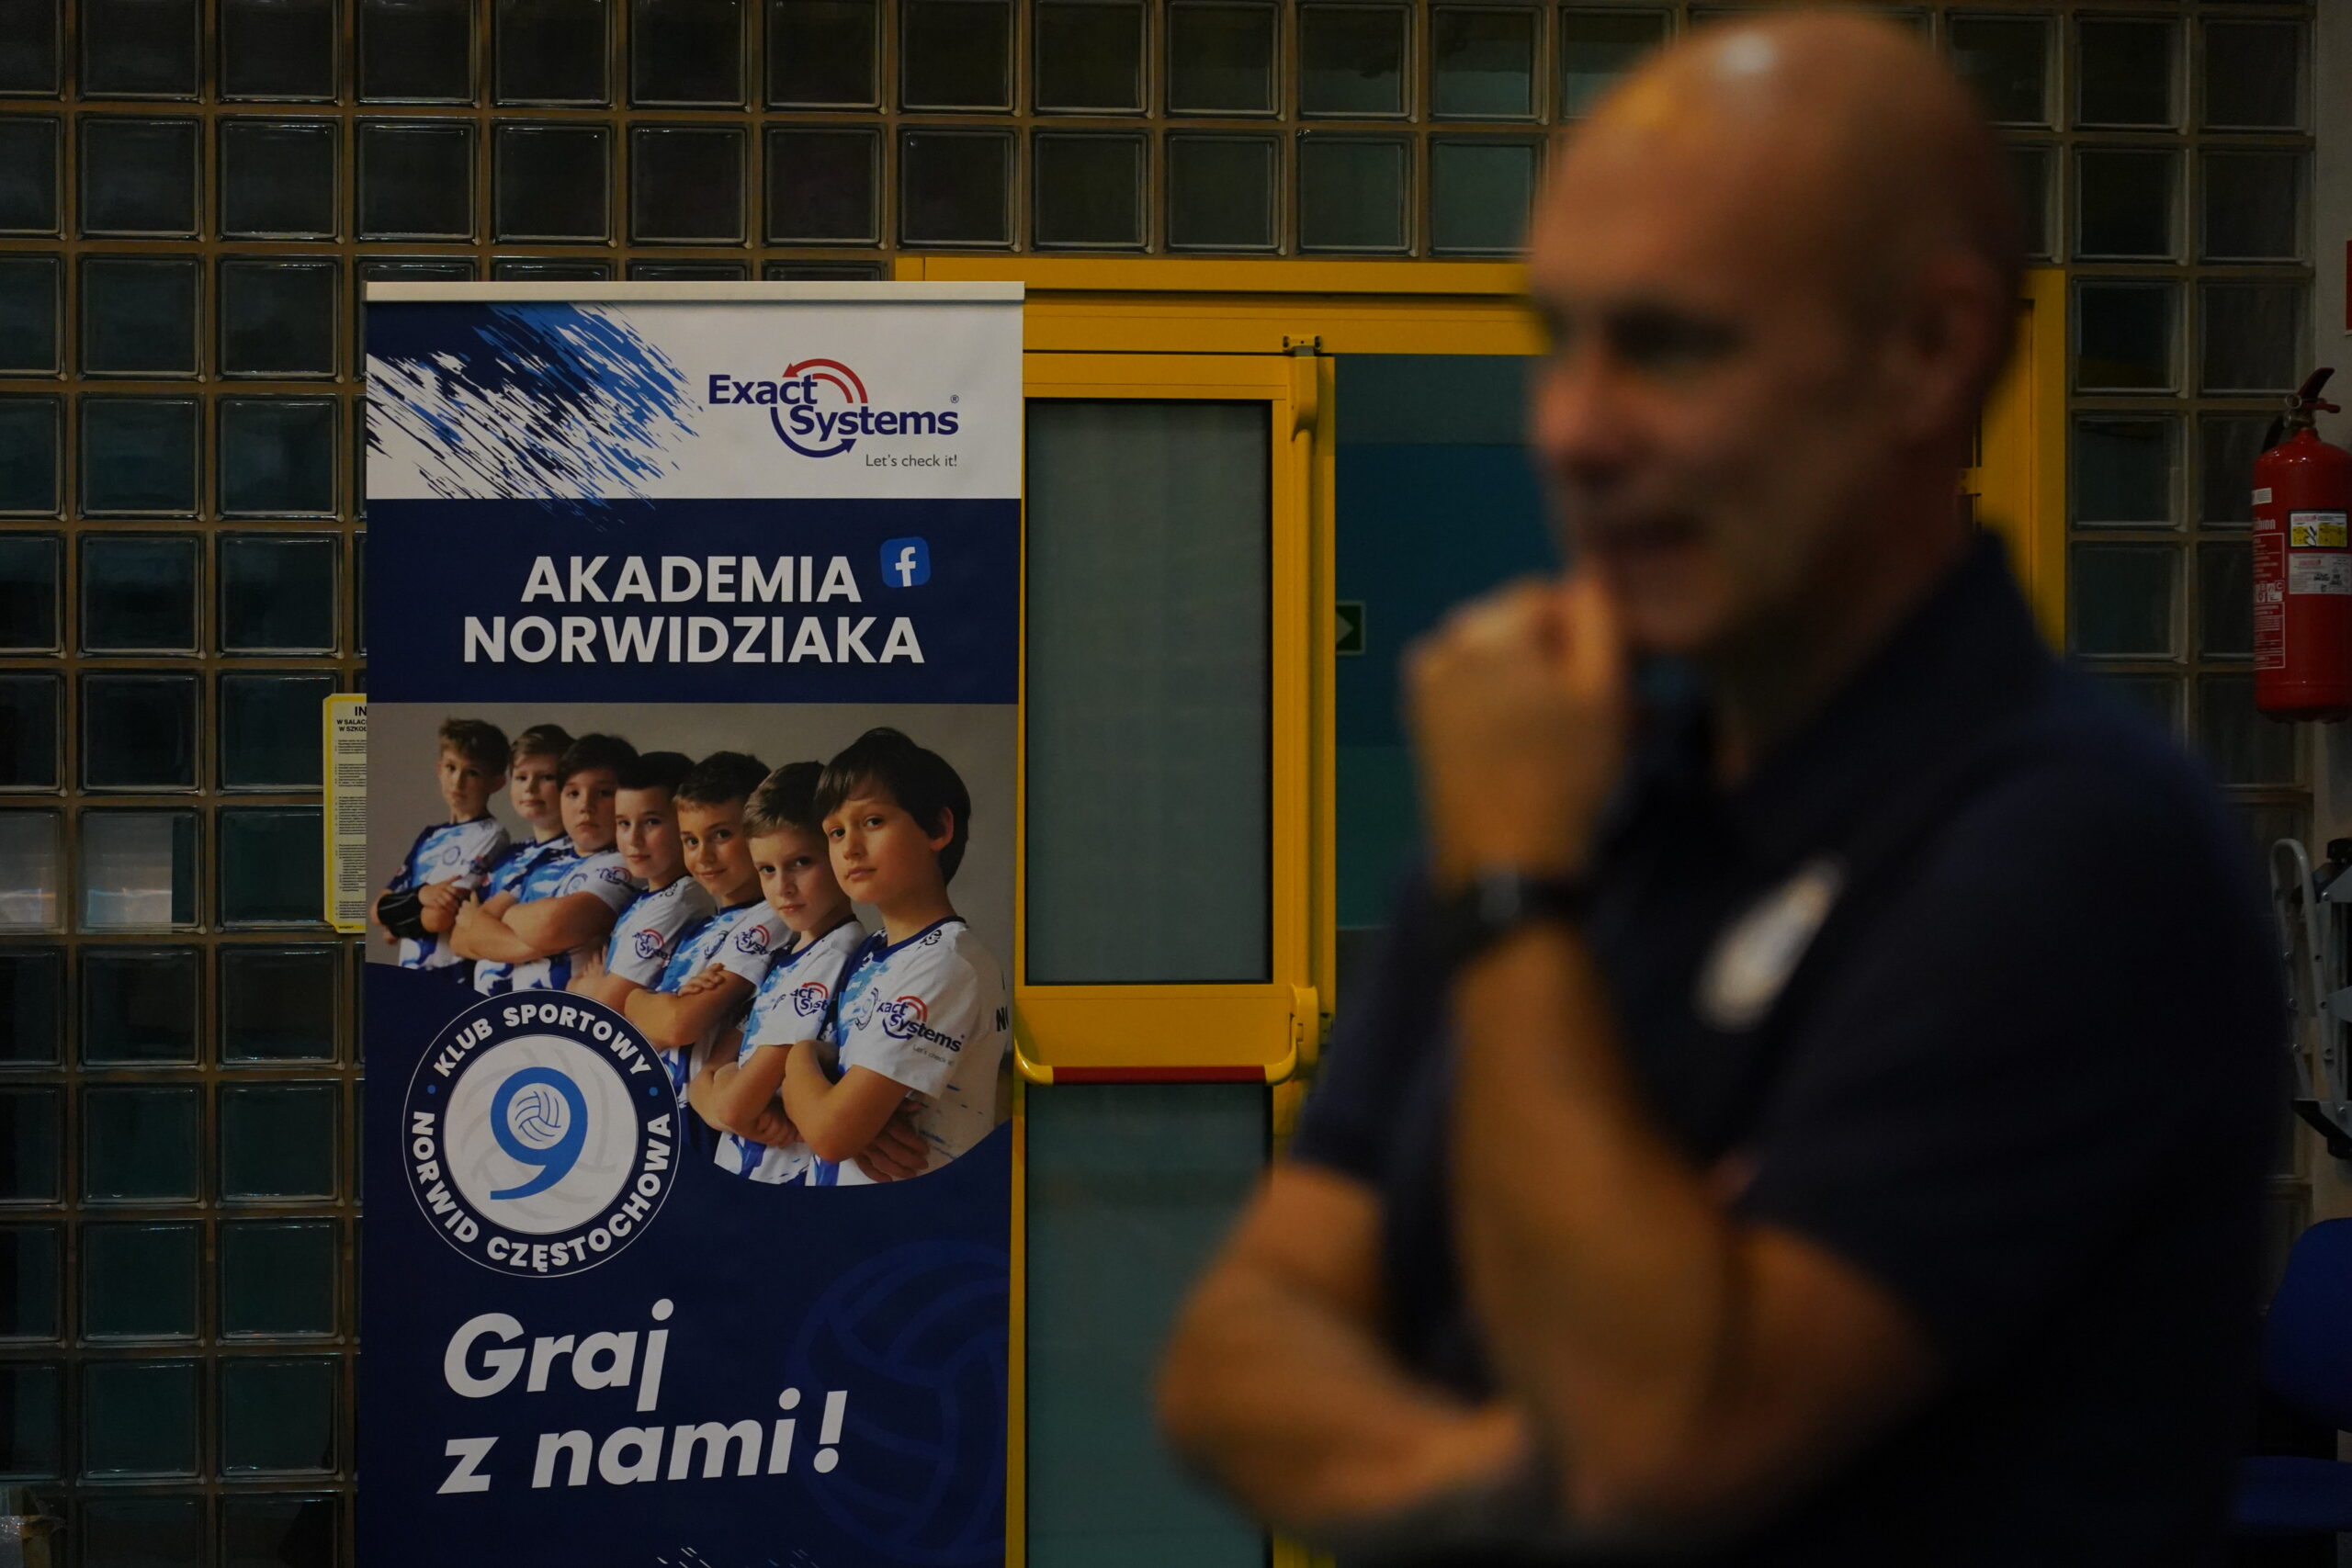 Akademia Norwidziaka prowadzi nabór. Odbył się też otwarty trening siatkówki dla uczniów z 8 klasy 9